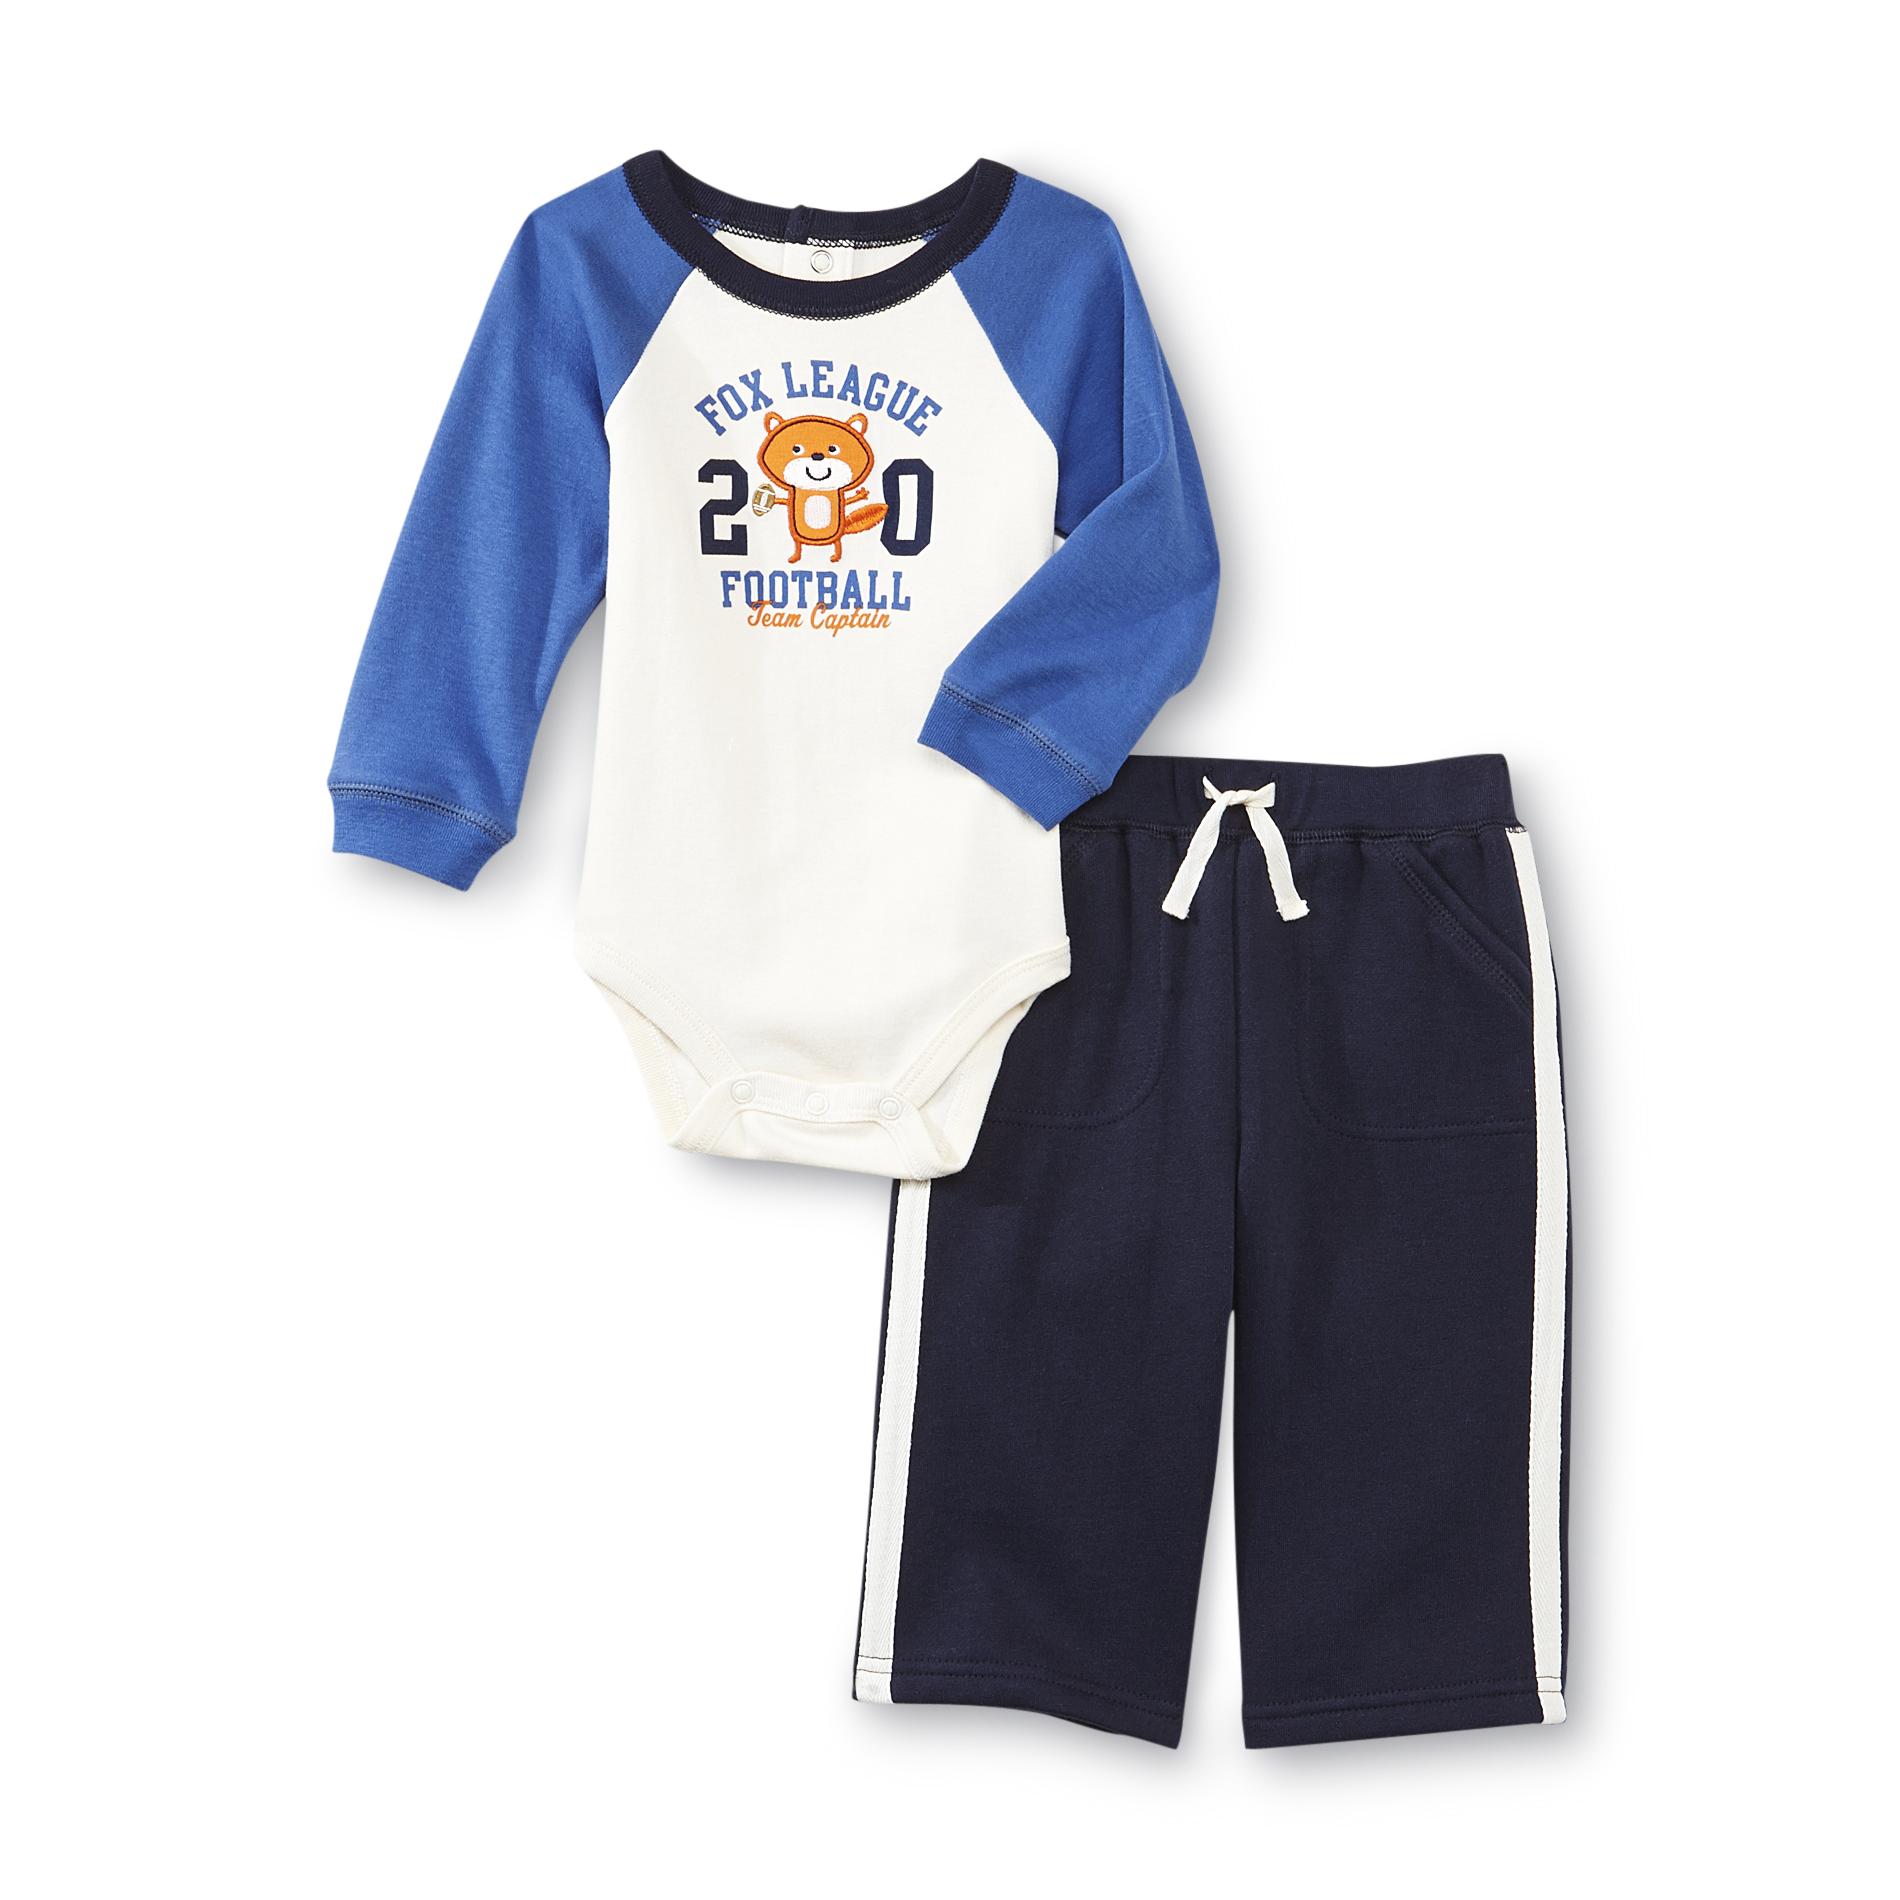 Little Wonders Newborn Boy's Long-Sleeve Bodysuit & Fleece Pants - Fox League Footbal